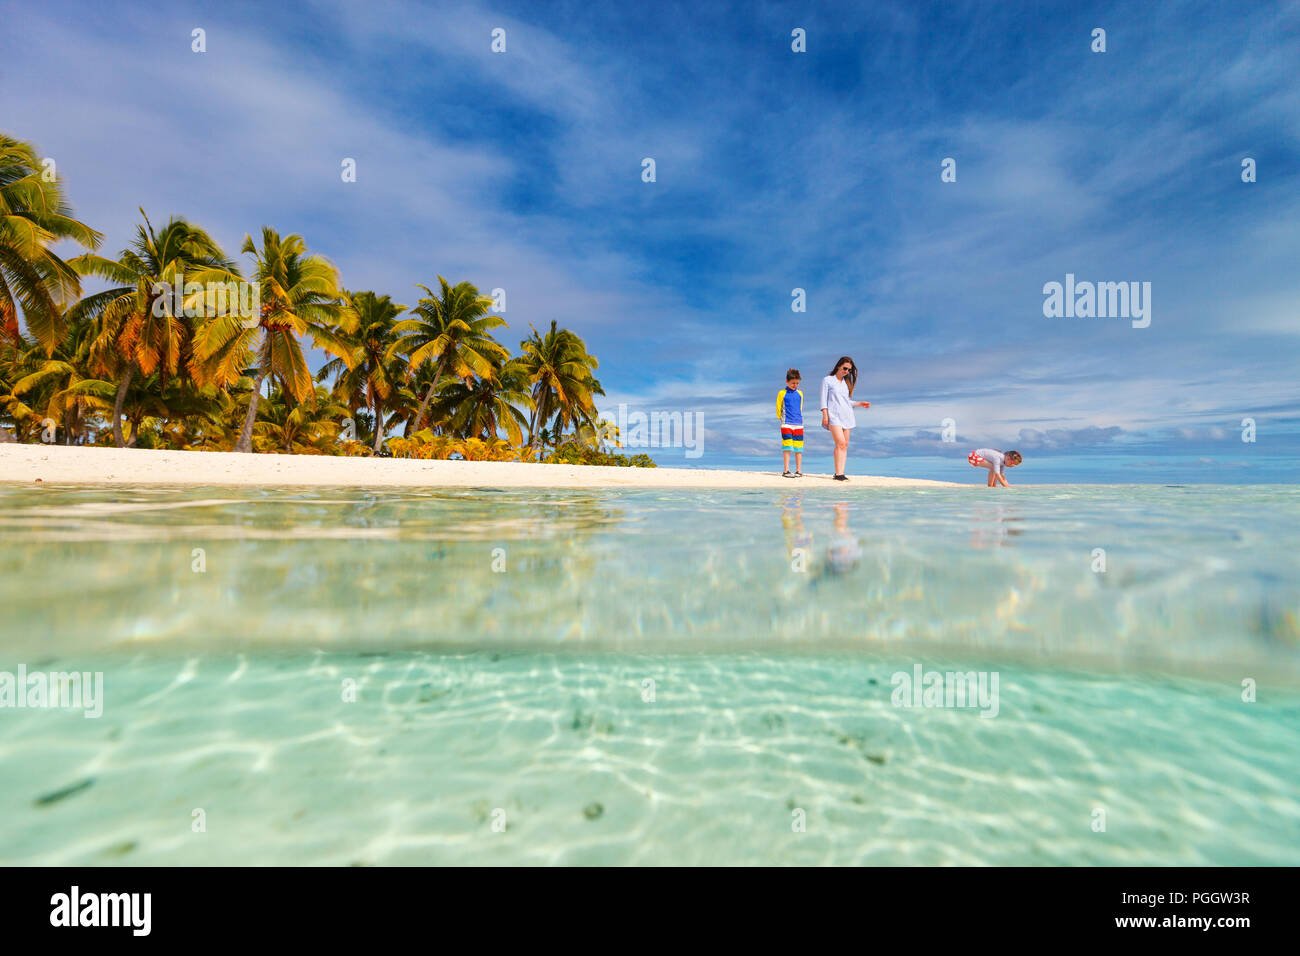 Madre e bambini e famiglia in spiaggia tropicale sull'isola di Aitutaki, Isole Cook, Sud Pacifico Foto Stock